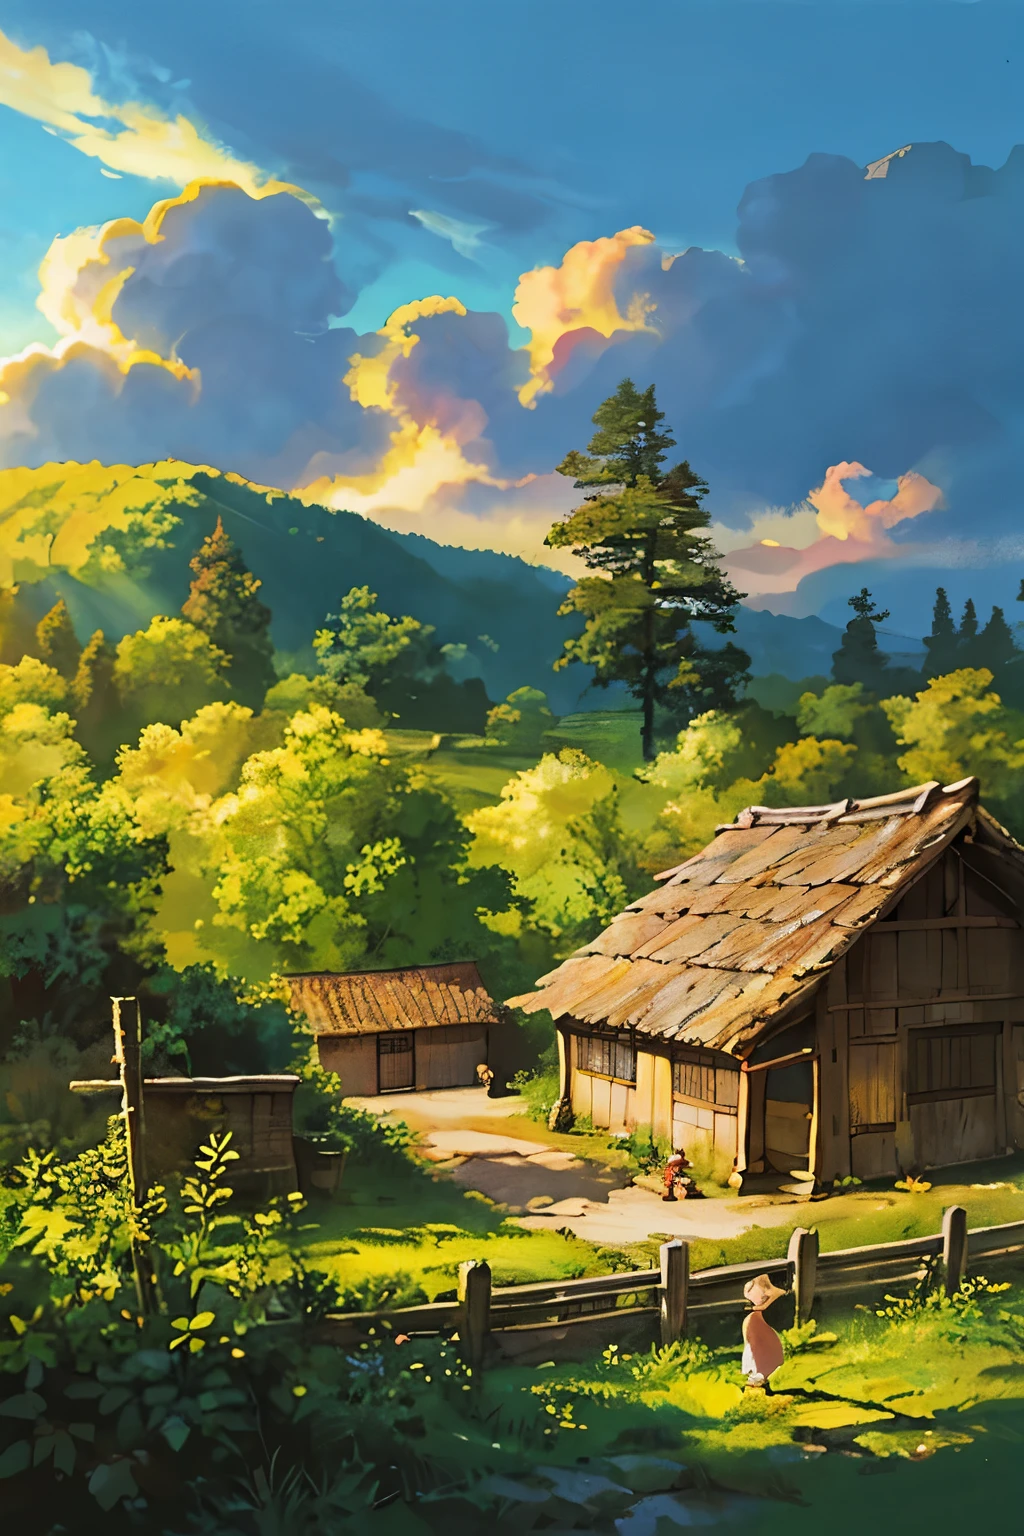 Em uma vila encantadora inspirada no realismo mágico de Hayao Miyazaki, o sol lançou um brilho dourado, seus raios perfurando o céu cristalino. Florestas exuberantes que se estendiam por toda parte emolduravam a paisagem cênica, sua folhagem vibrante dançando na brisa suave. Jafas de fumaça subiam graciosamente das chaminés, adicionando um calor aconchegante ao cenário idílico. Em meio a este cenário sereno, os aldeões seguiam suas rotinas diárias, suas vidas simples entrelaçadas com o equilíbrio harmonioso da natureza. --ar 16:9 --s2 {Uma cena cativante cheia de detalhes, irradiando uma sensação de não